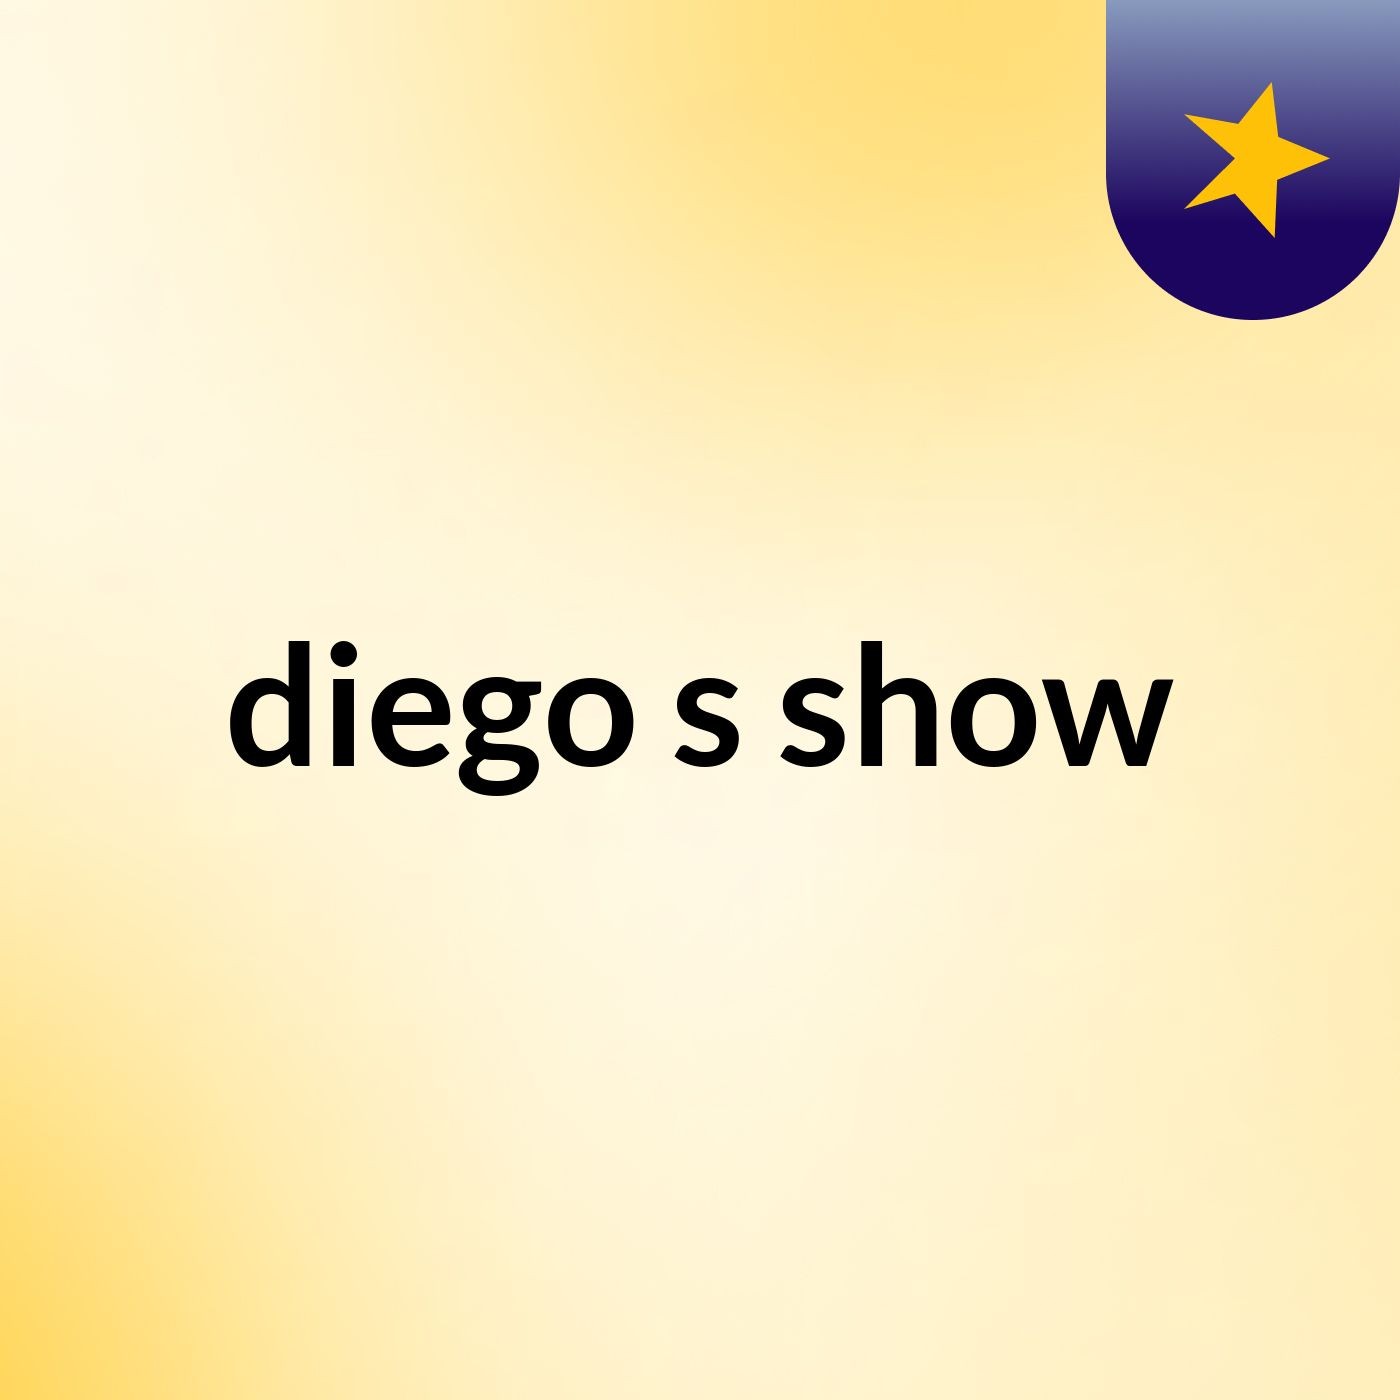 diego's show